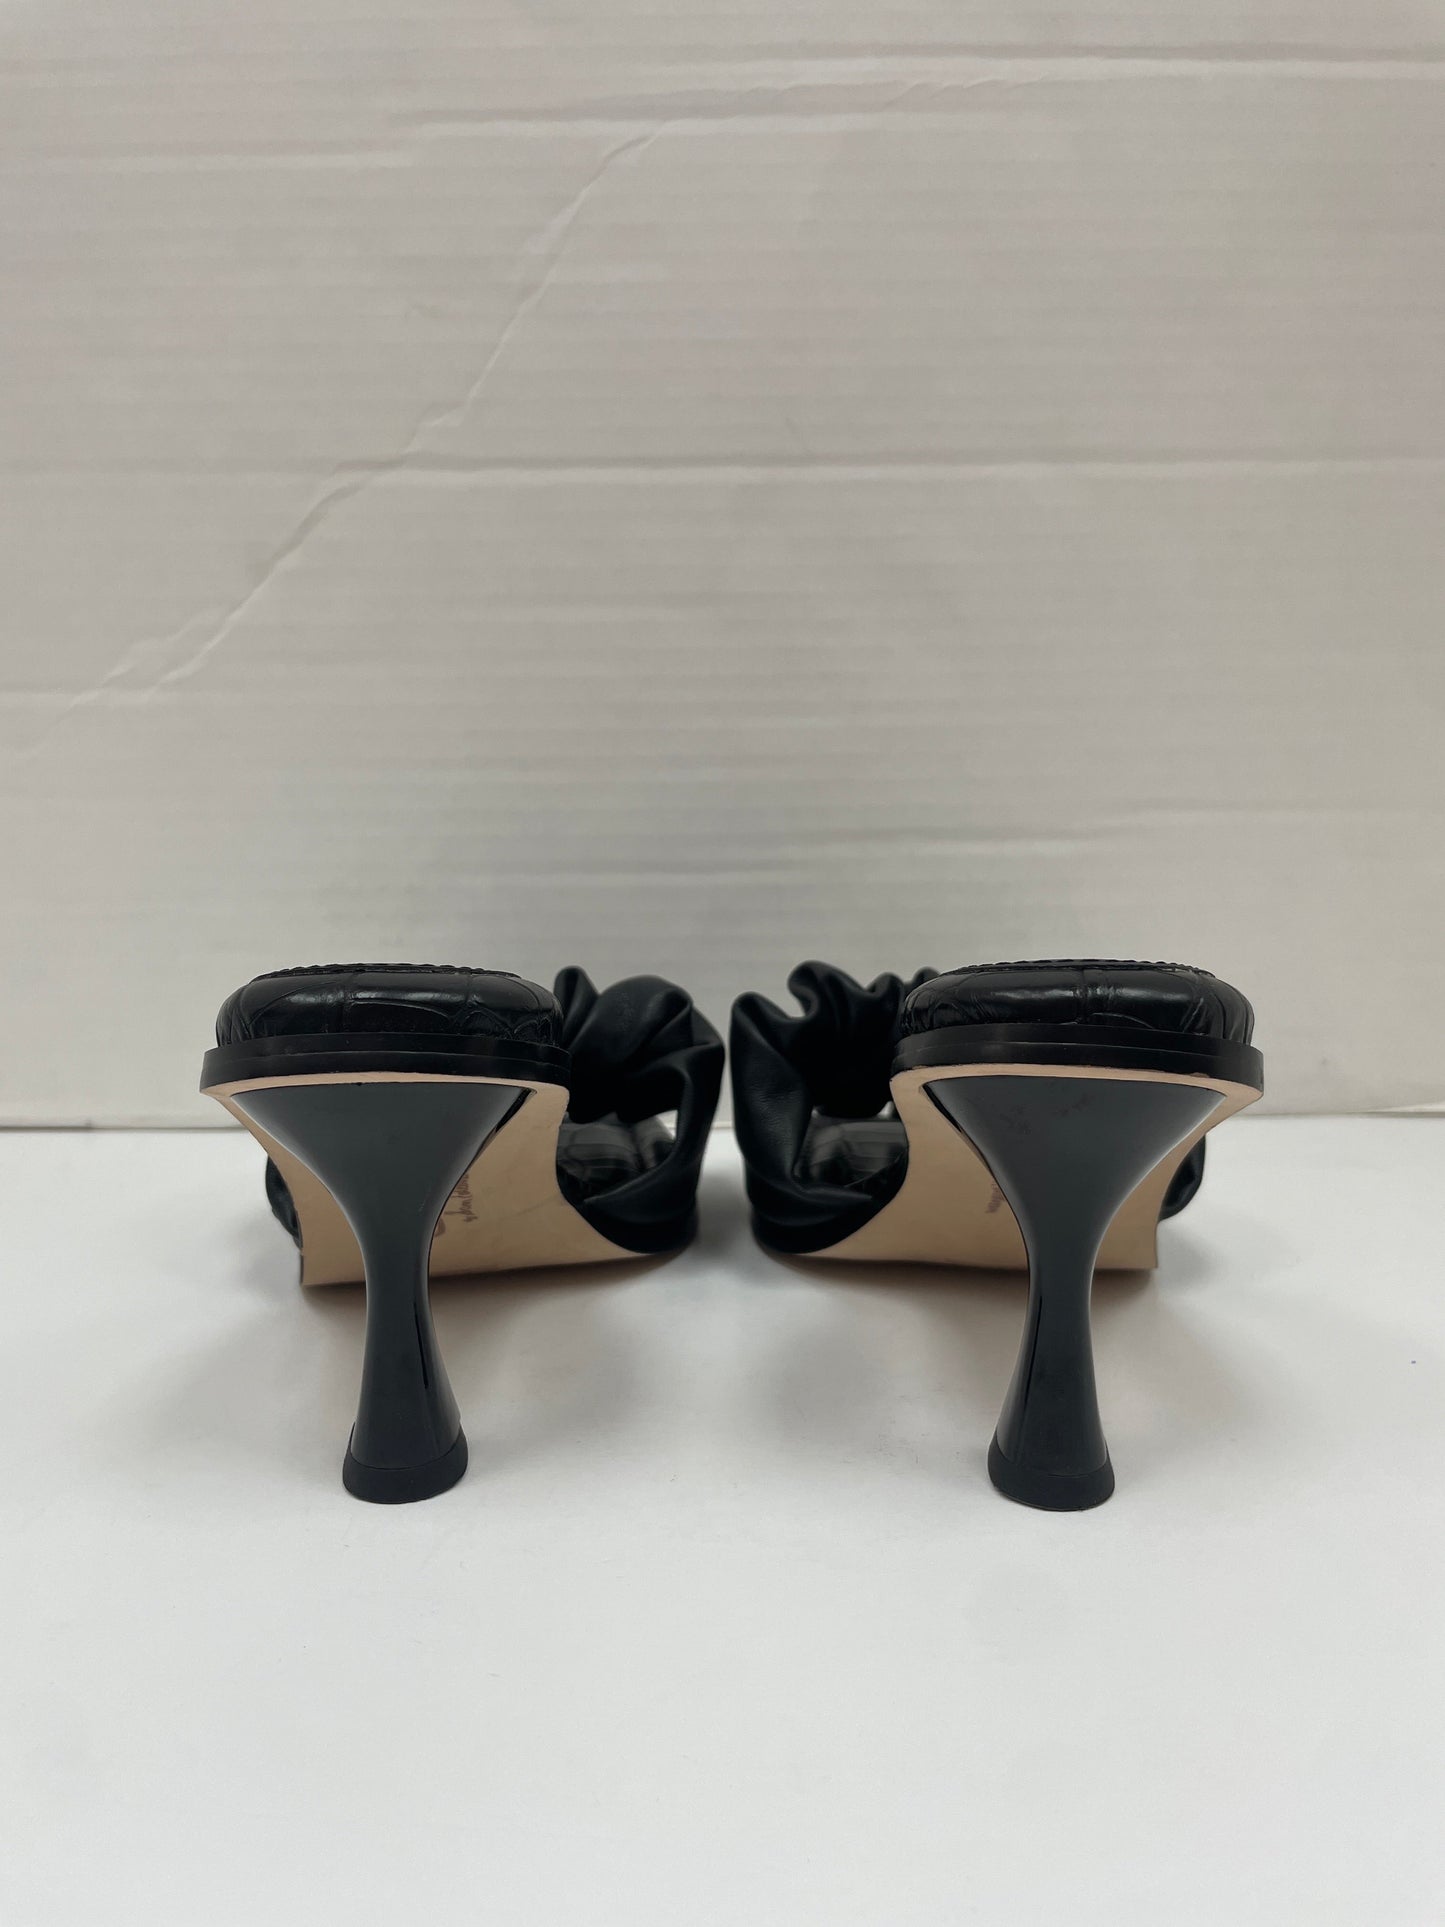 Sandals Heels Kitten By Sam Edelman  Size: 7